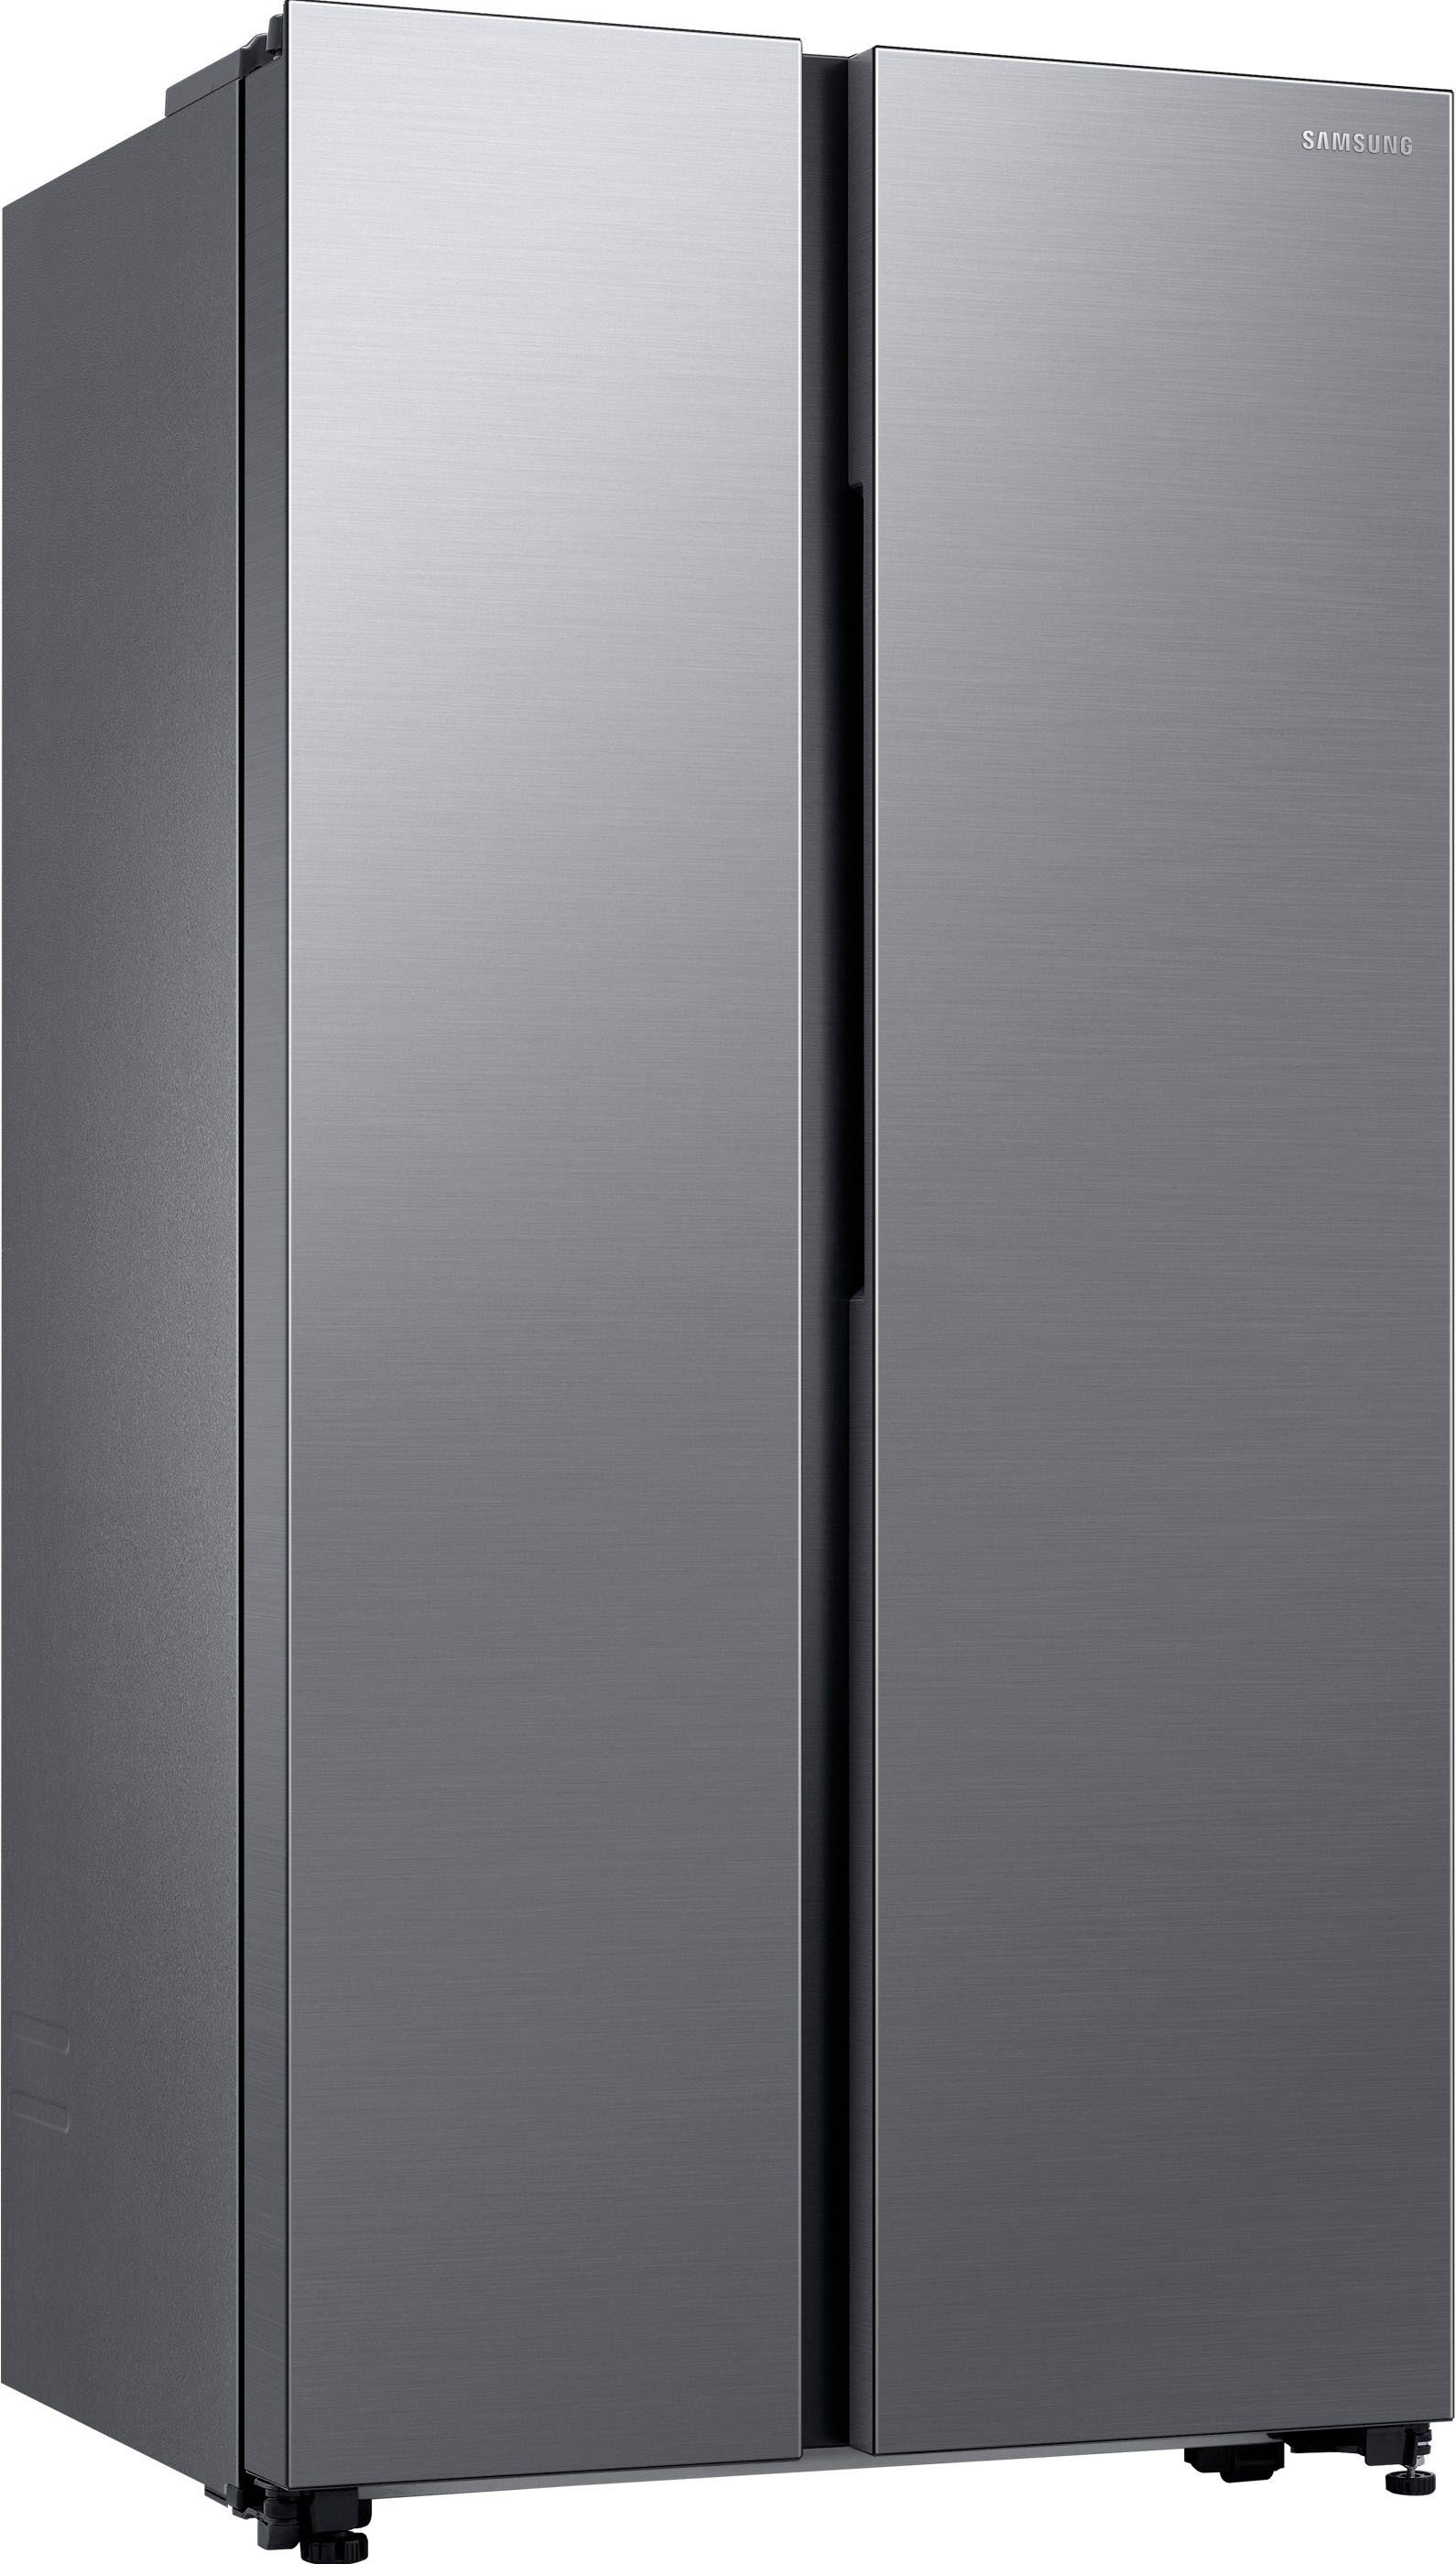 Samsung Side-by-Side RS62DG5003S9, 178 cm hoch, 91,2 cm breit, mit Digital Inverter Kompressor